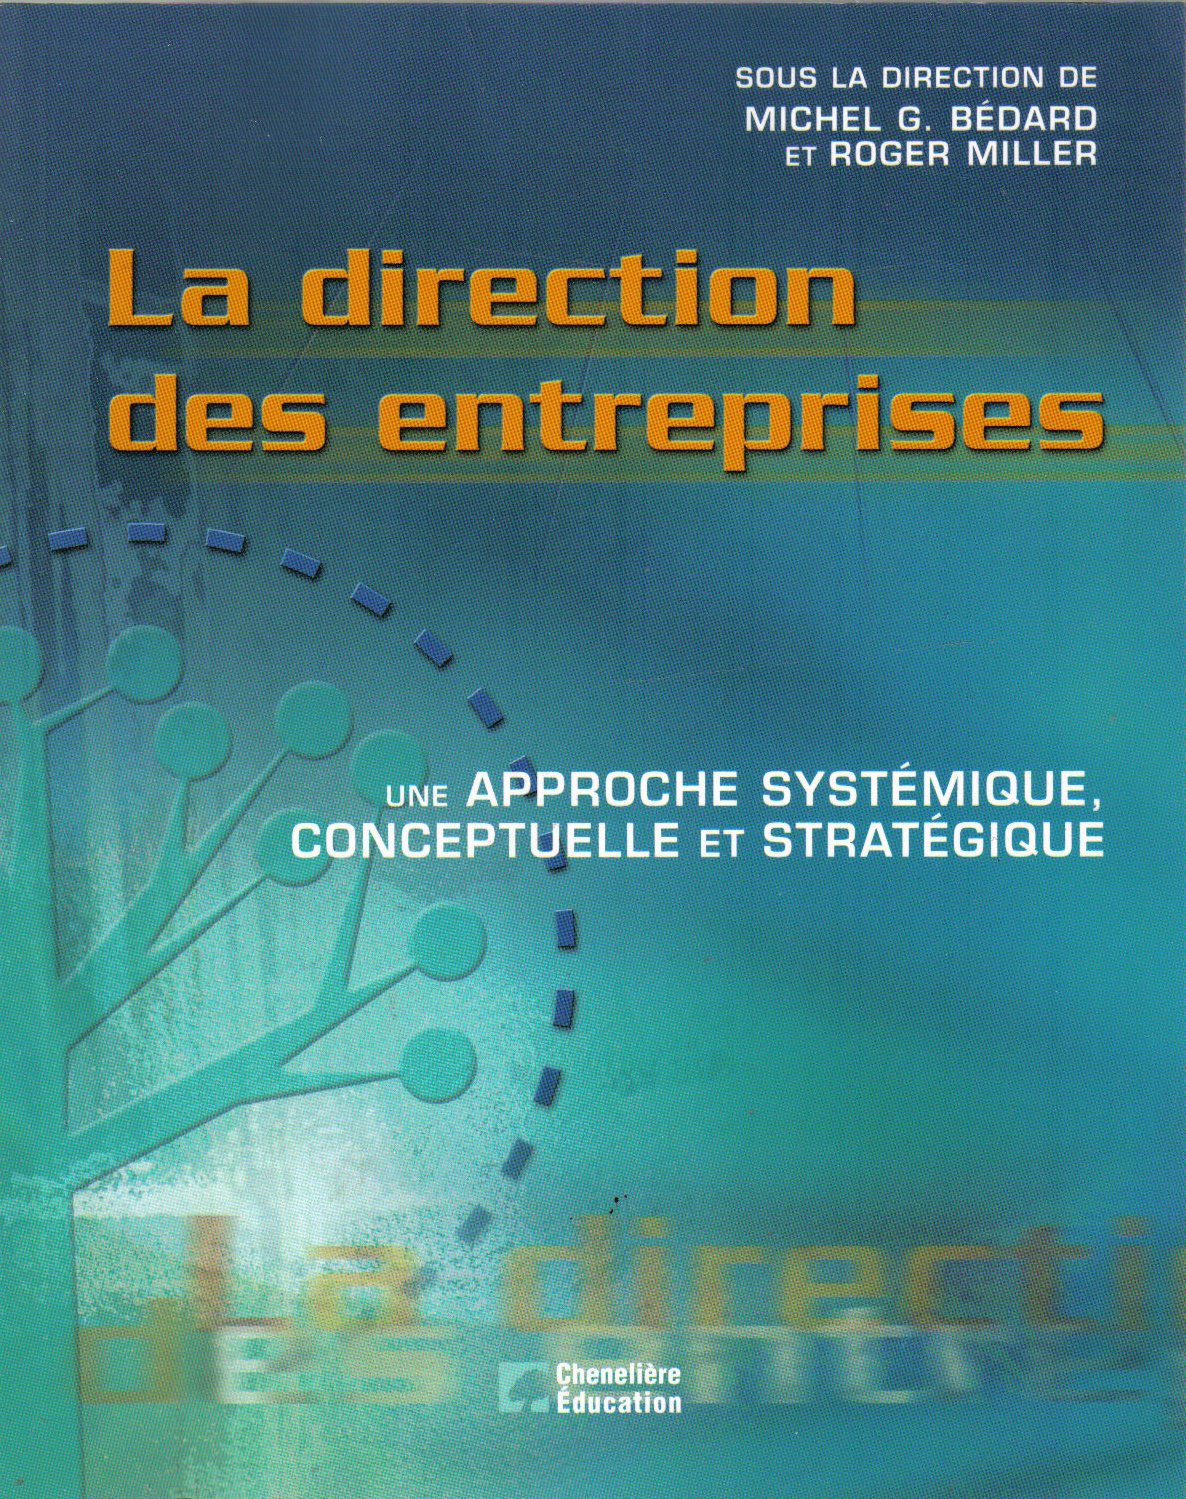 La direction des entreprises : Une approche systémique, conceptuelle et stratégique - Michel G. Bédard